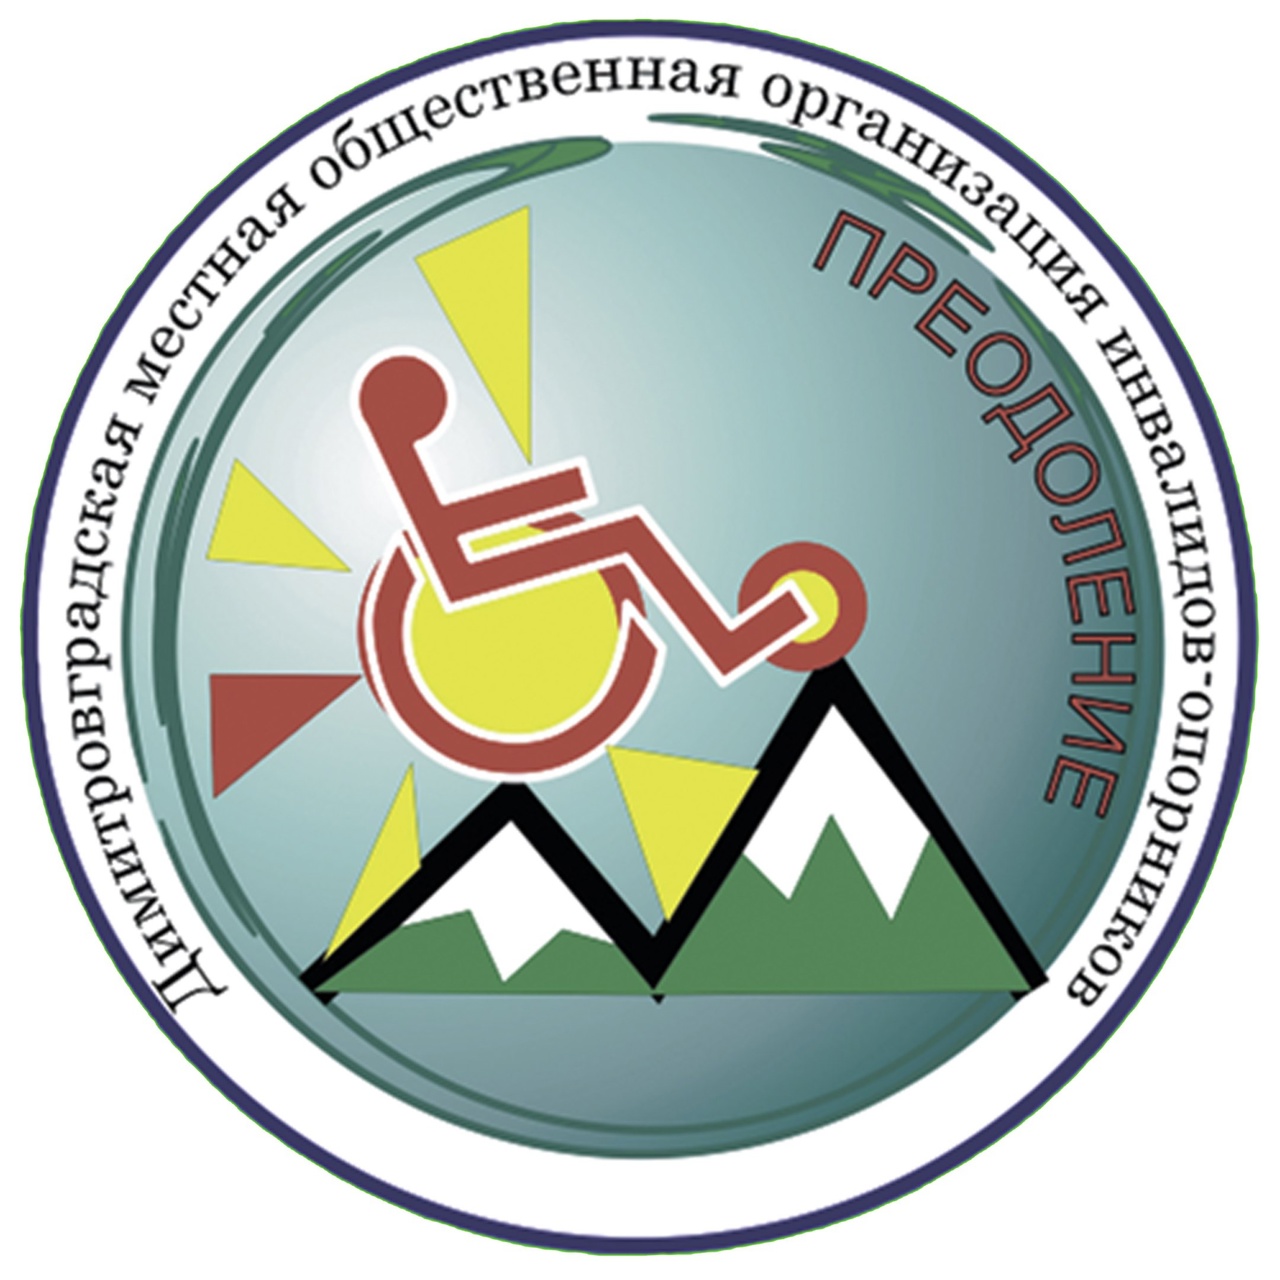 Члены Димитровградской общественной организации «Преодоление» пройдут медицинское обследование в мобильном центре здоровья.